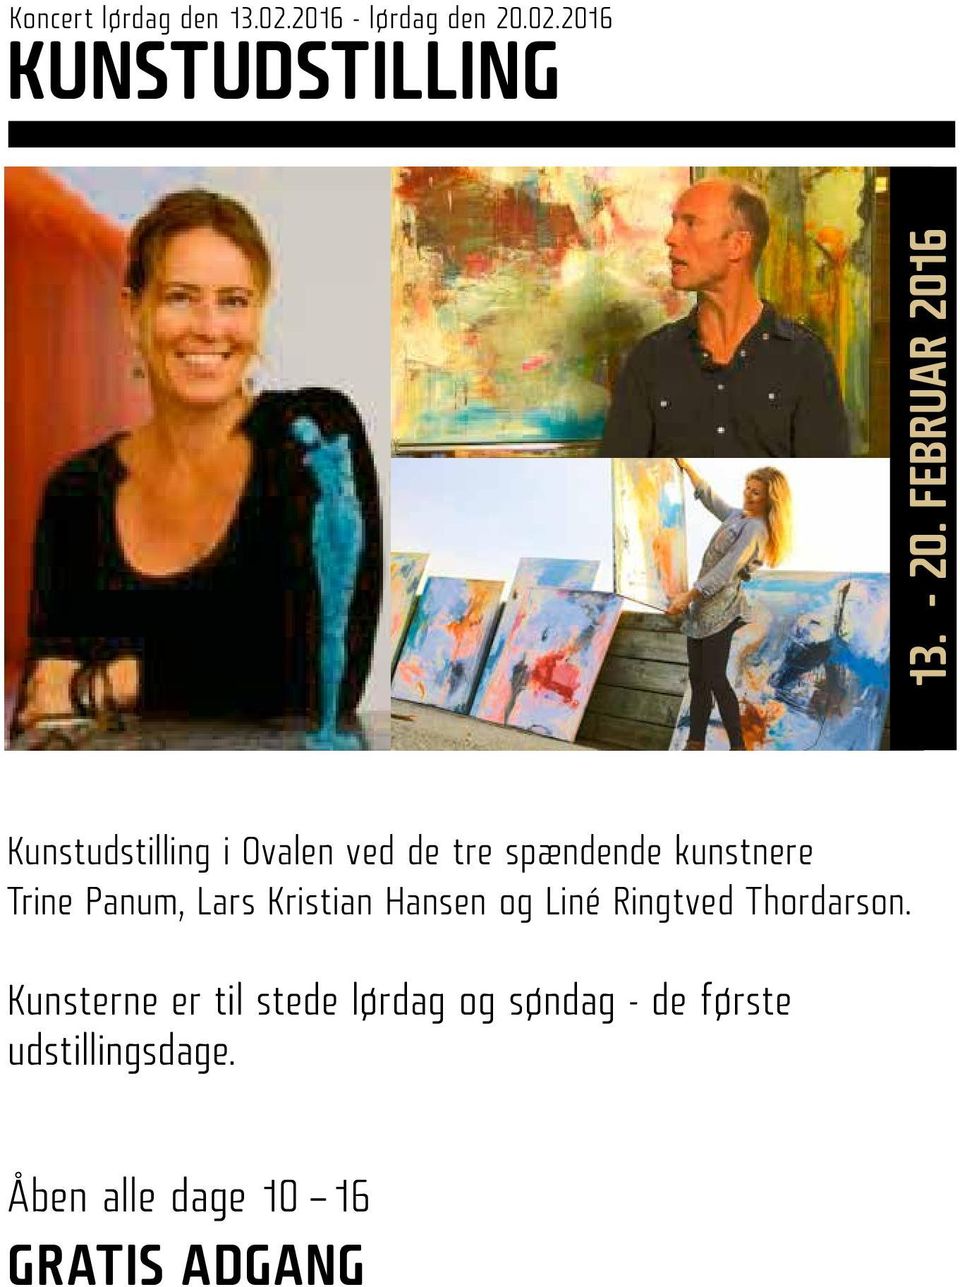 Panum, Lars Kristian Hansen og Liné Ringtved Thordarson.